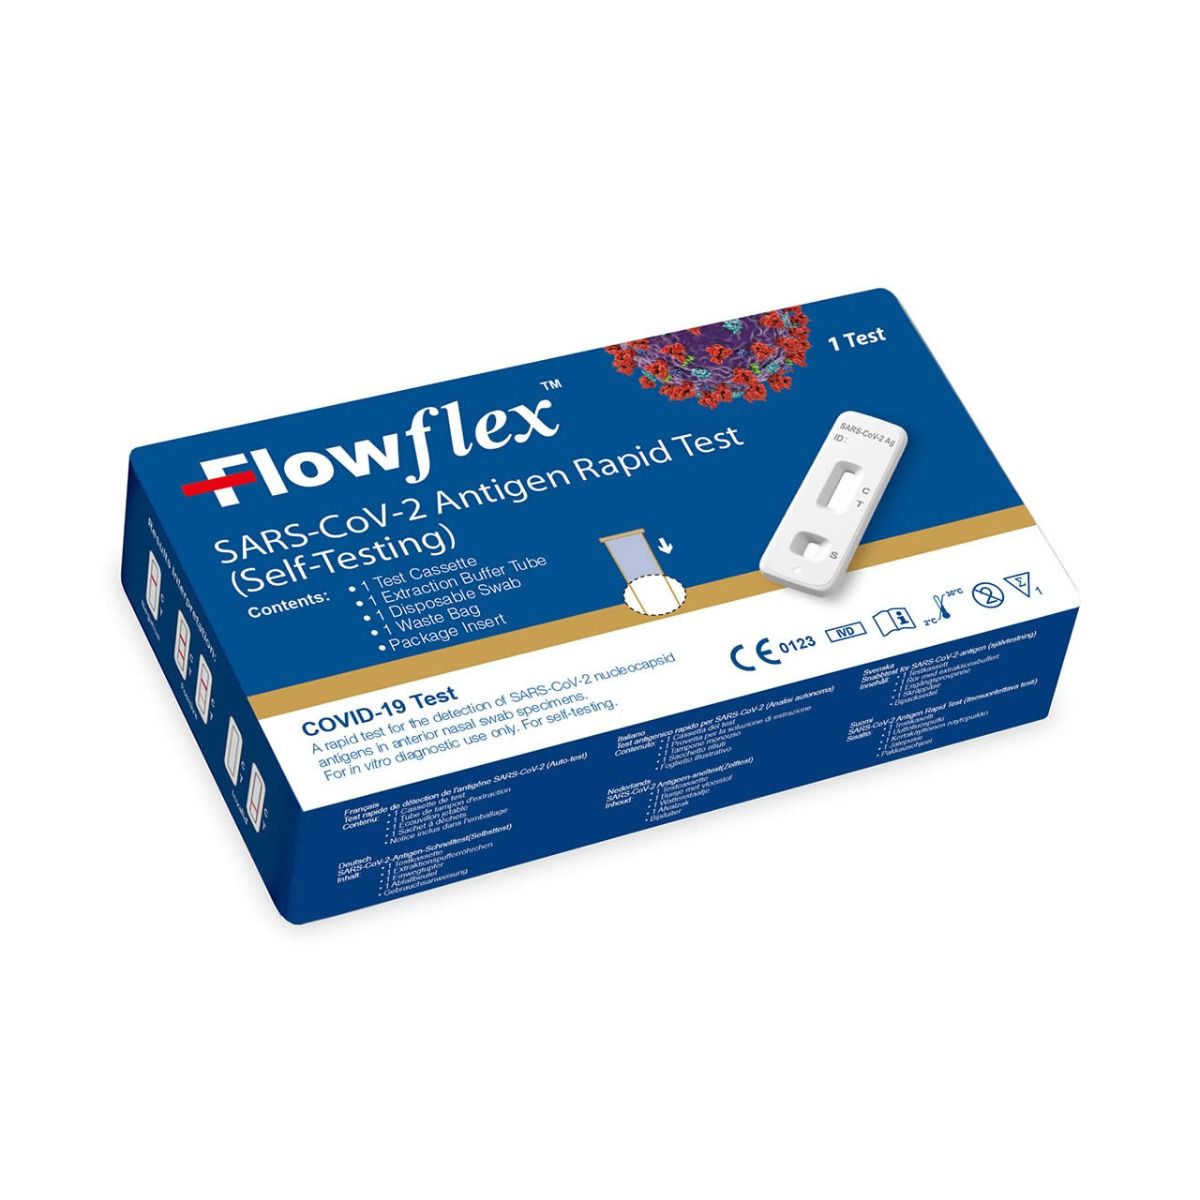 Flowflex™ SARS-CoV-2 Antigen Rapid Test Kit 1's